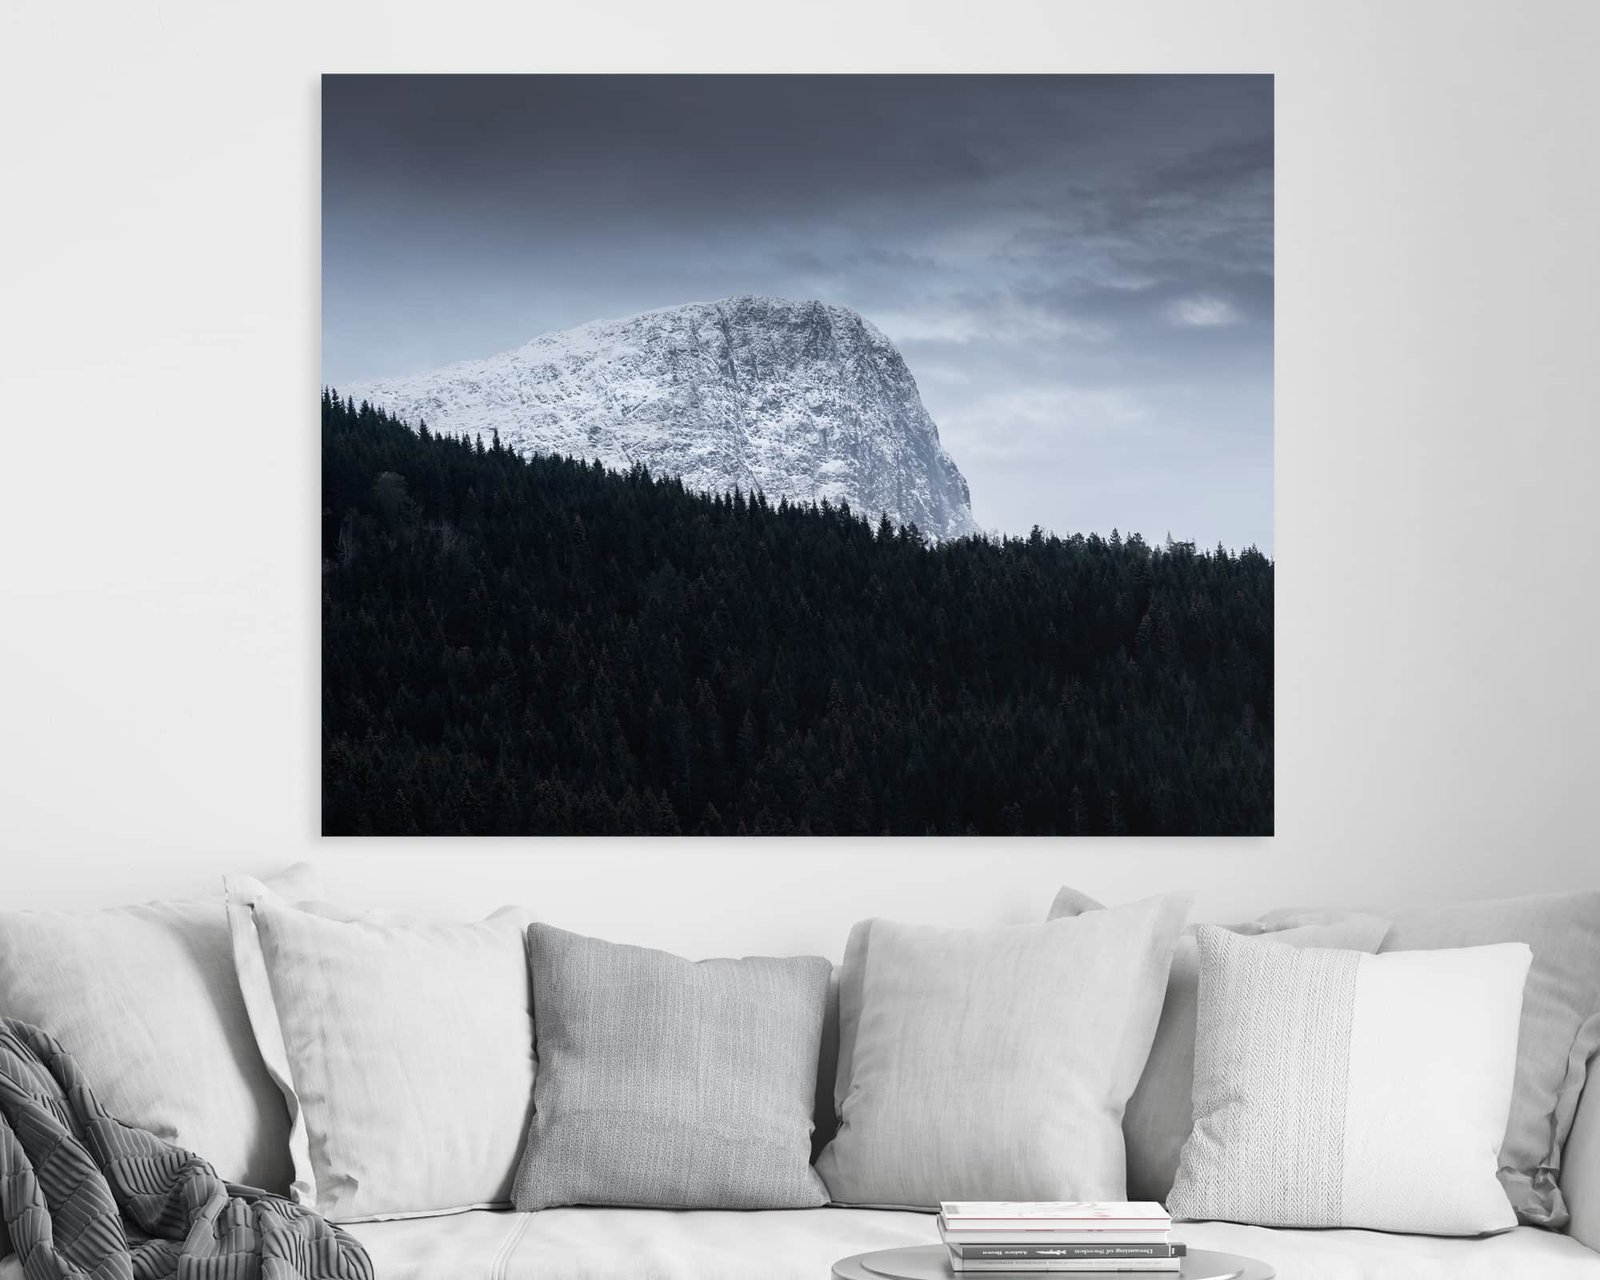 Fali kép egy sötét erdő mögötti havas hegyről